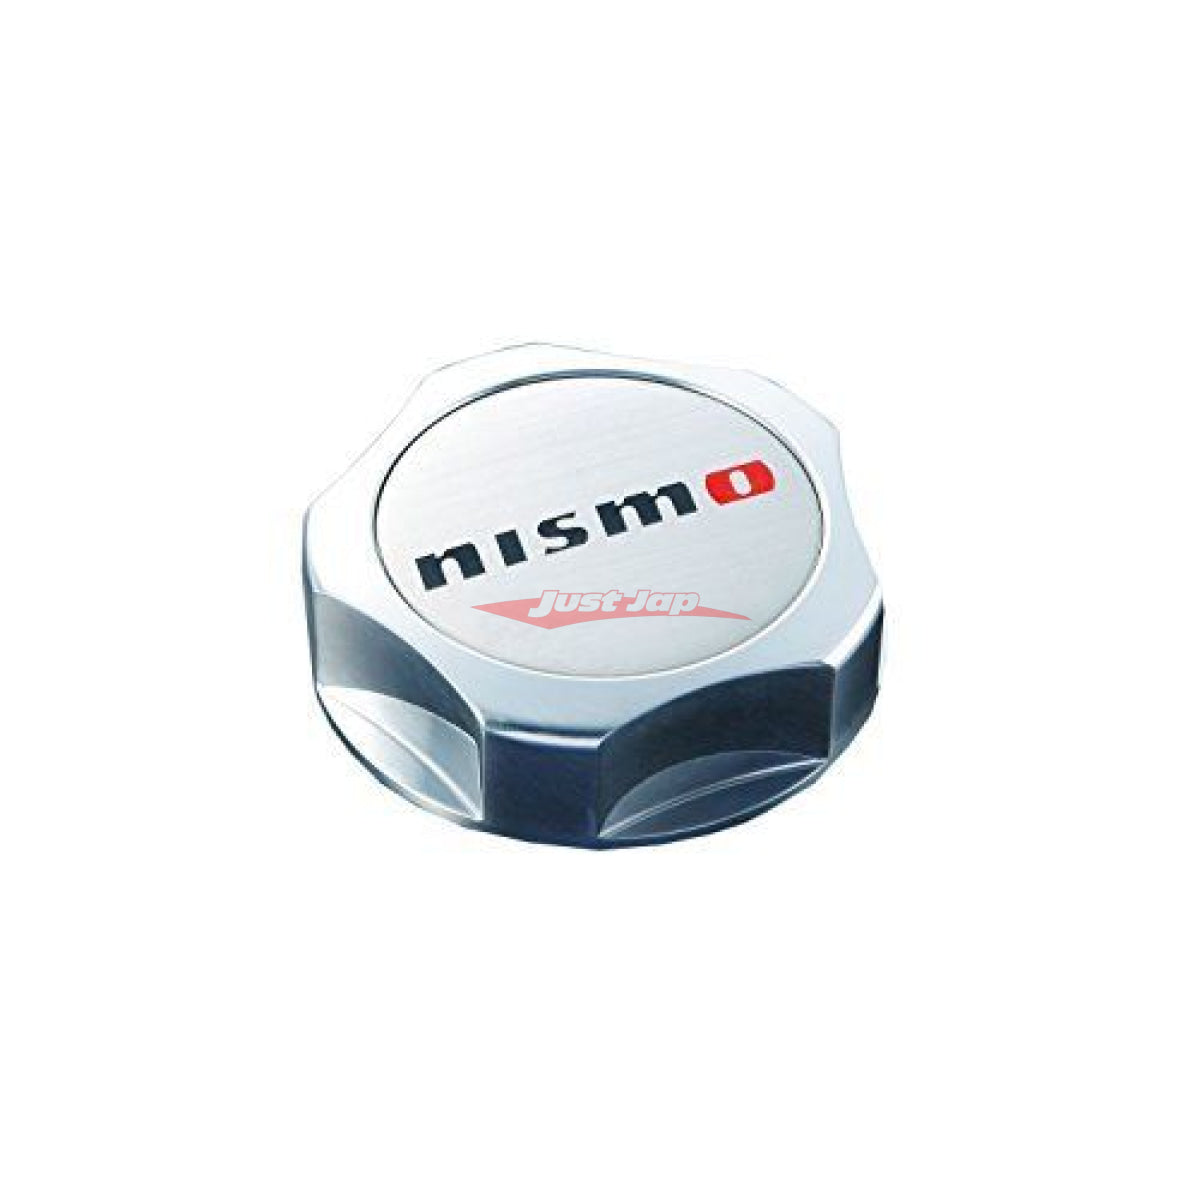 Nismo Oil Filler Cap fits Nissan (Polished Aluminium) – Just Jap